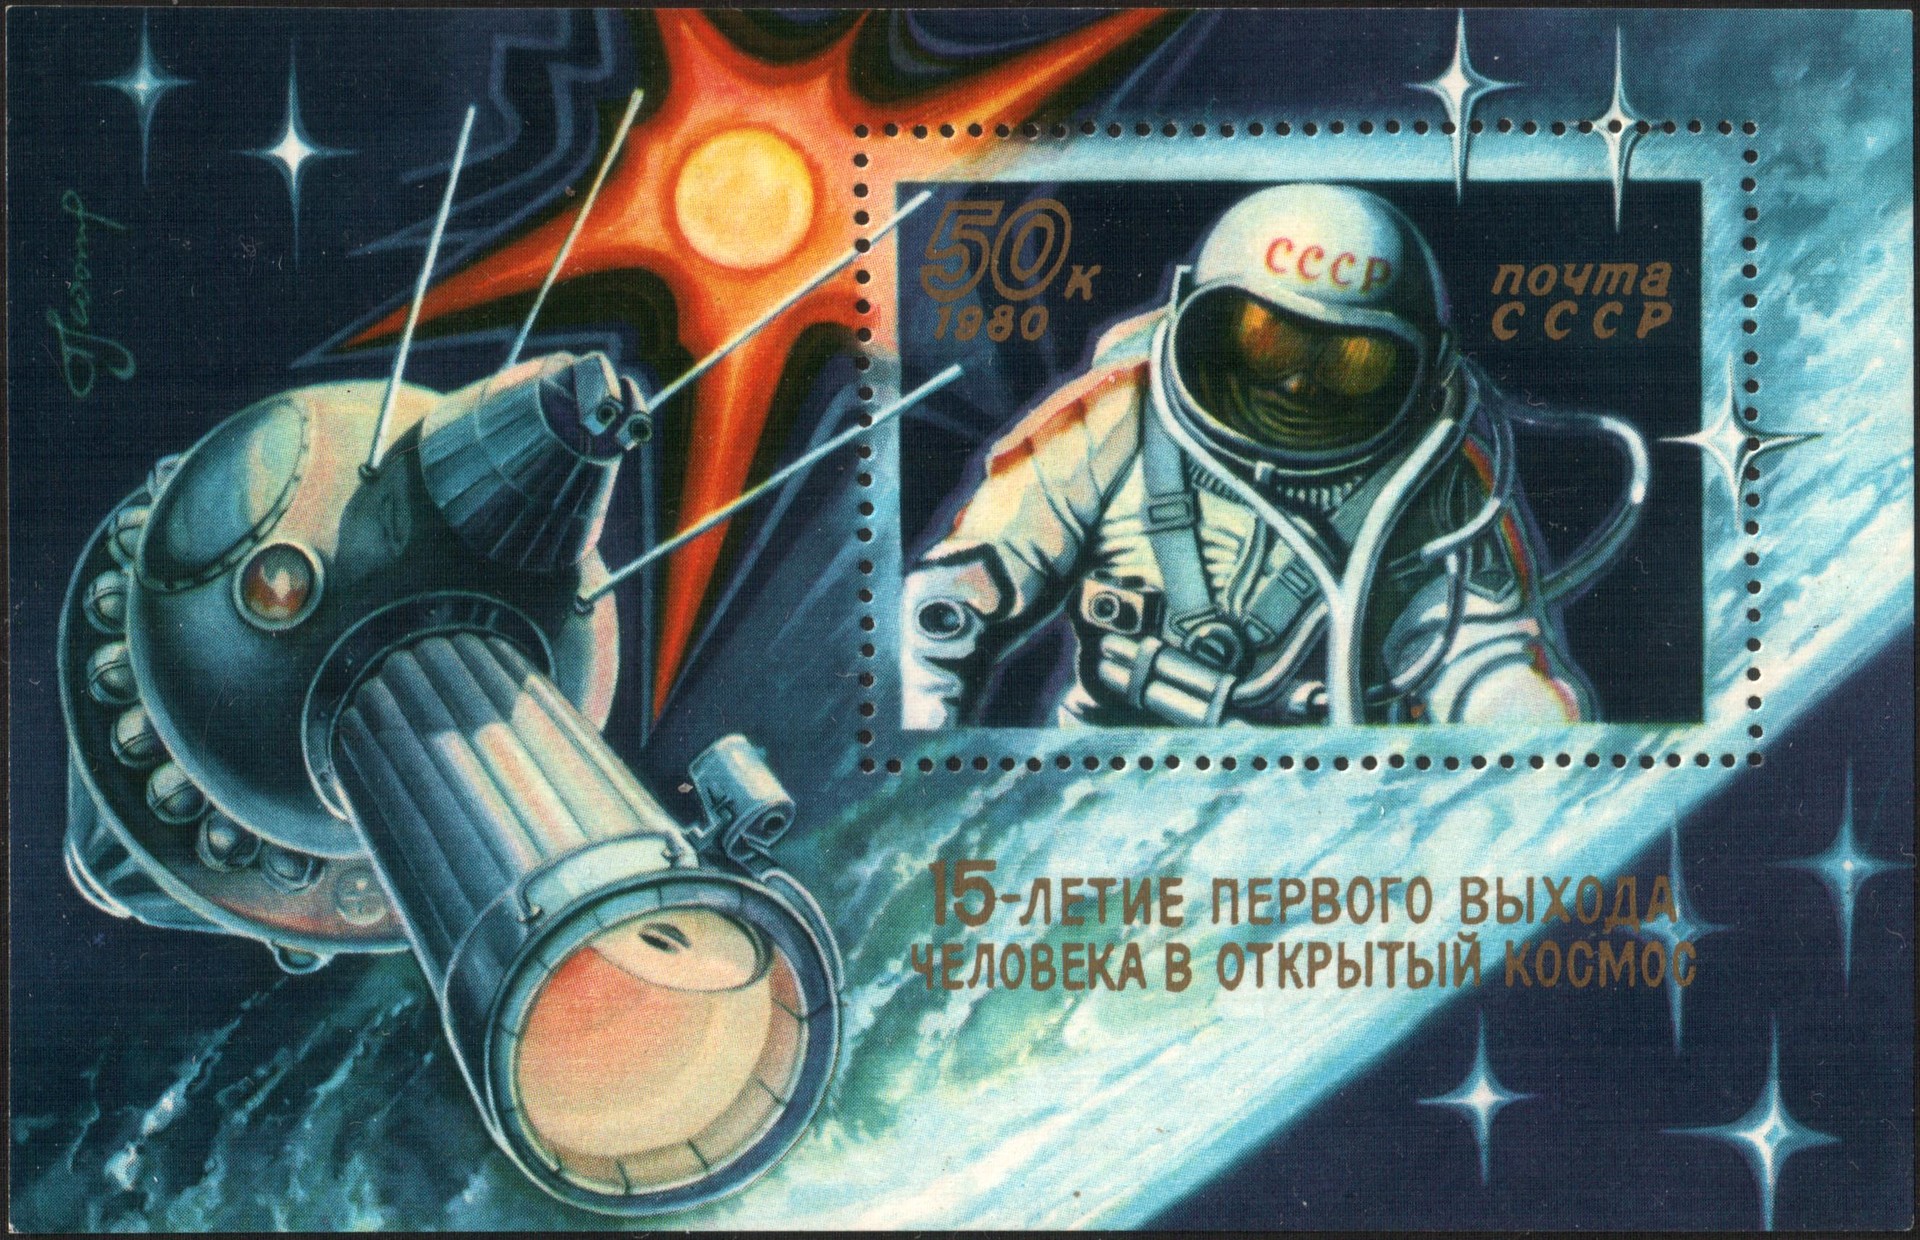 Depois de se aposentar da carreira como cosmonauta, Leonov dedicou-se à pintura. É de sua autoria uma série de selos dos correios russos de temática espacial.